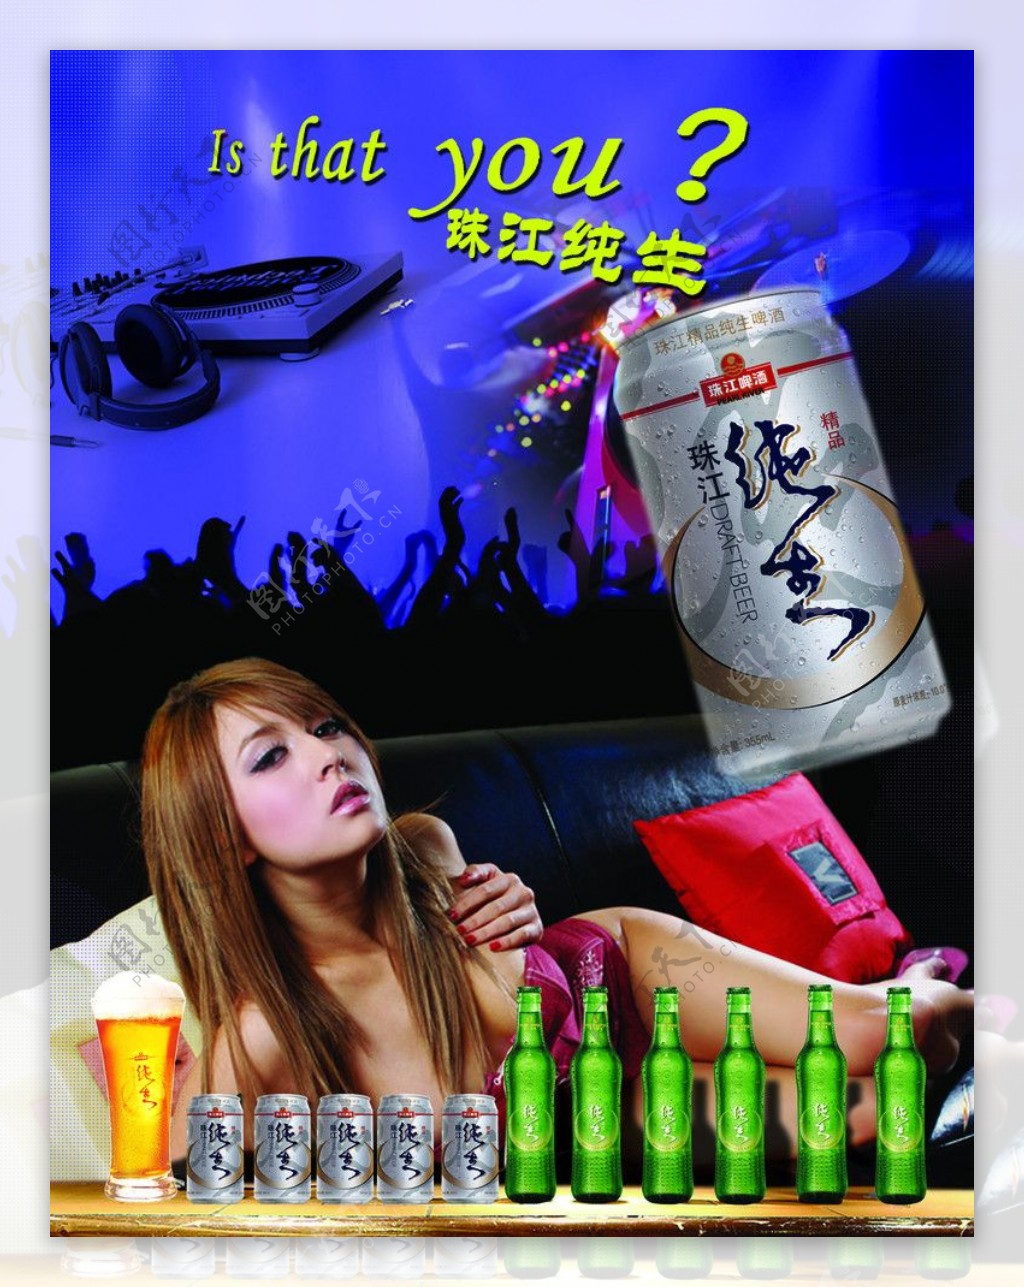 珠江啤酒图片